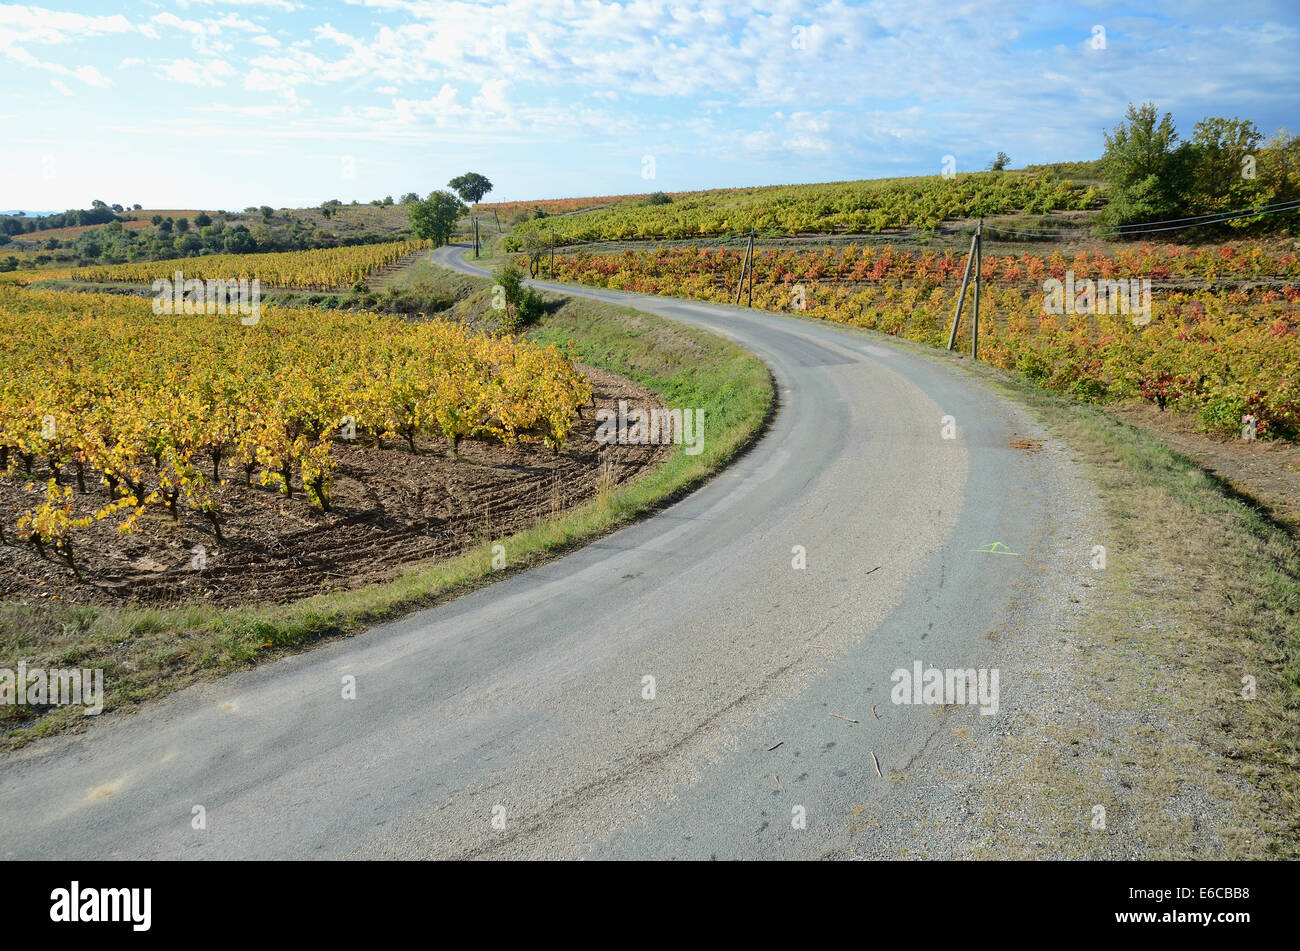 Route de vignes avec feuillage d'automne, AOC Faugeres, Hérault, France, Europe Banque D'Images